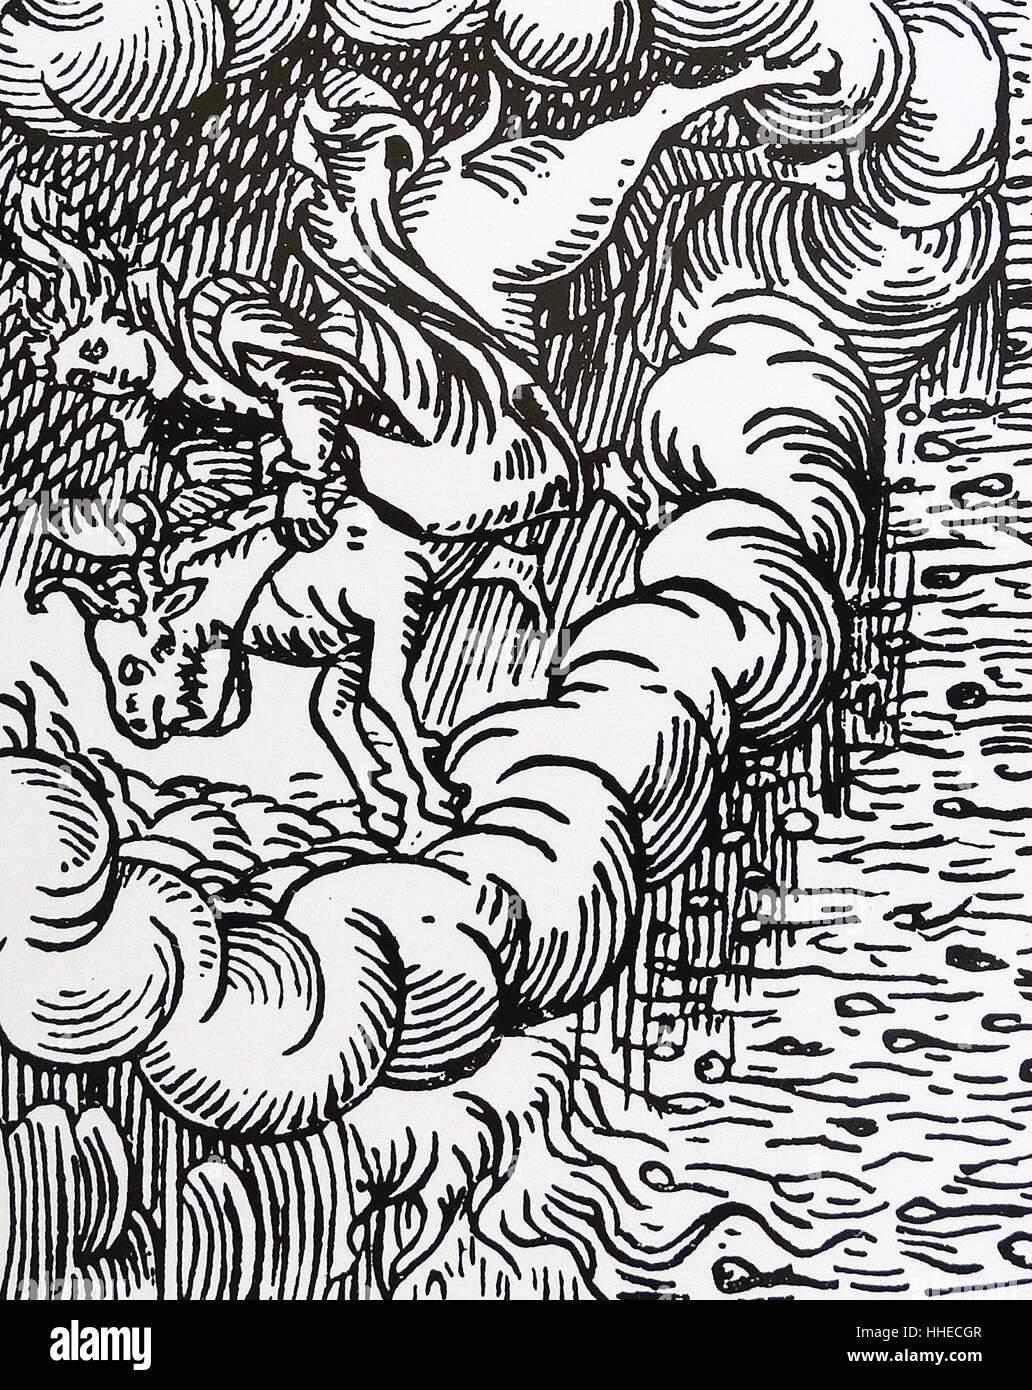 Une sorcière, école une chèvre à travers le ciel, faisant tomber la pluie des nuages. De Francesco Maria Guazzo Compendium Maleficarum, Milan, 1608. Banque D'Images